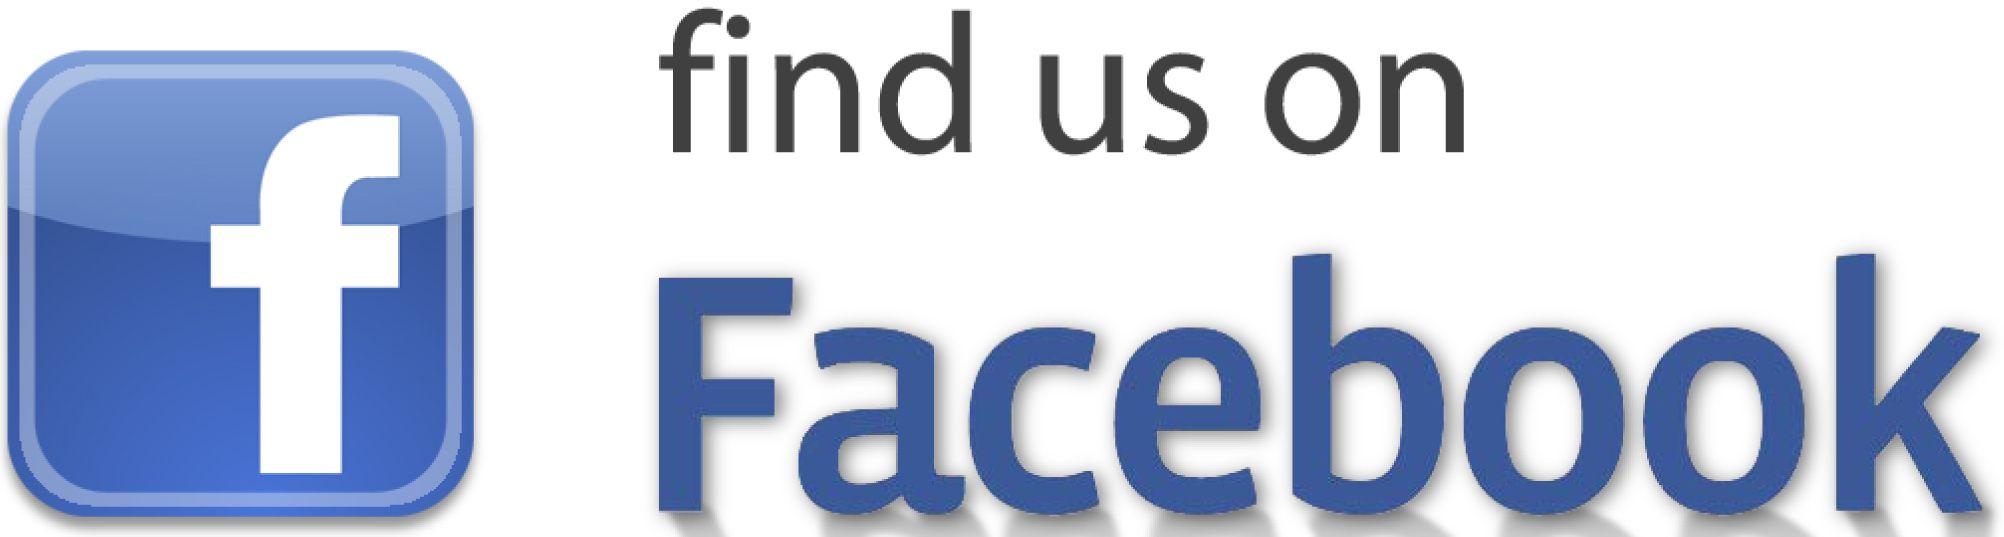 Visit Us On Facebook Logo - ScimitarWeb Discussion